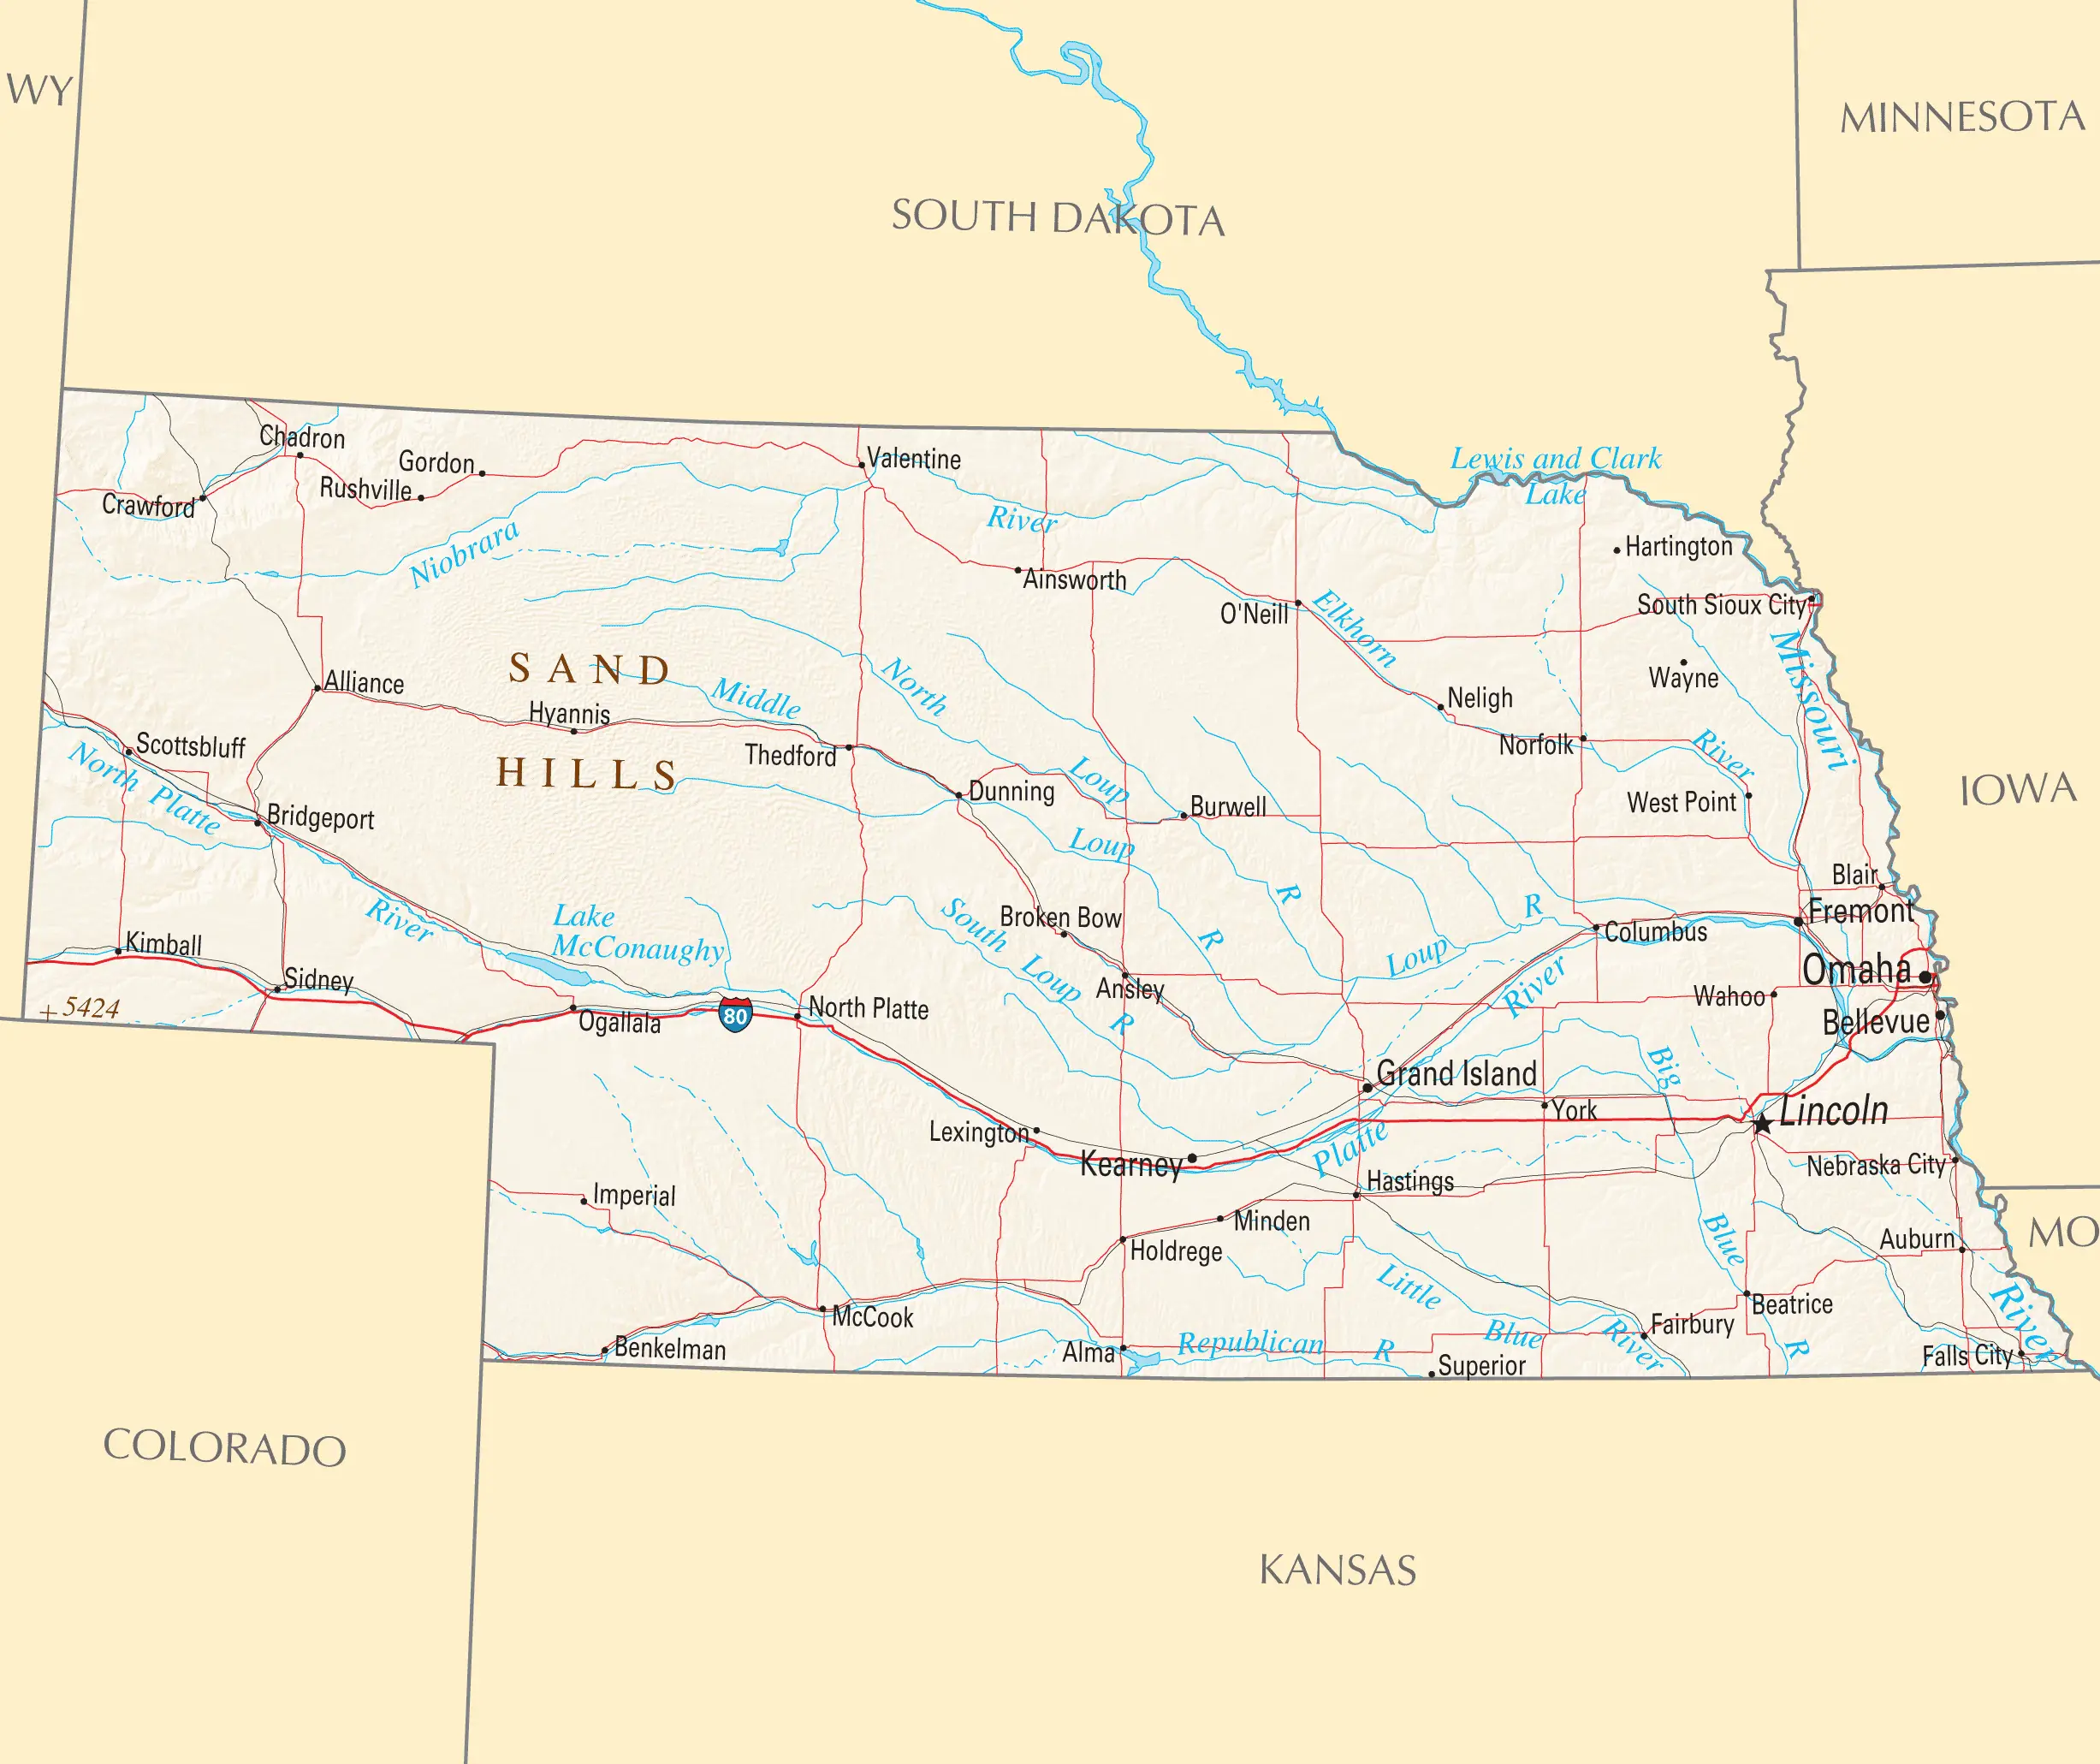 Nebraska Reference Map